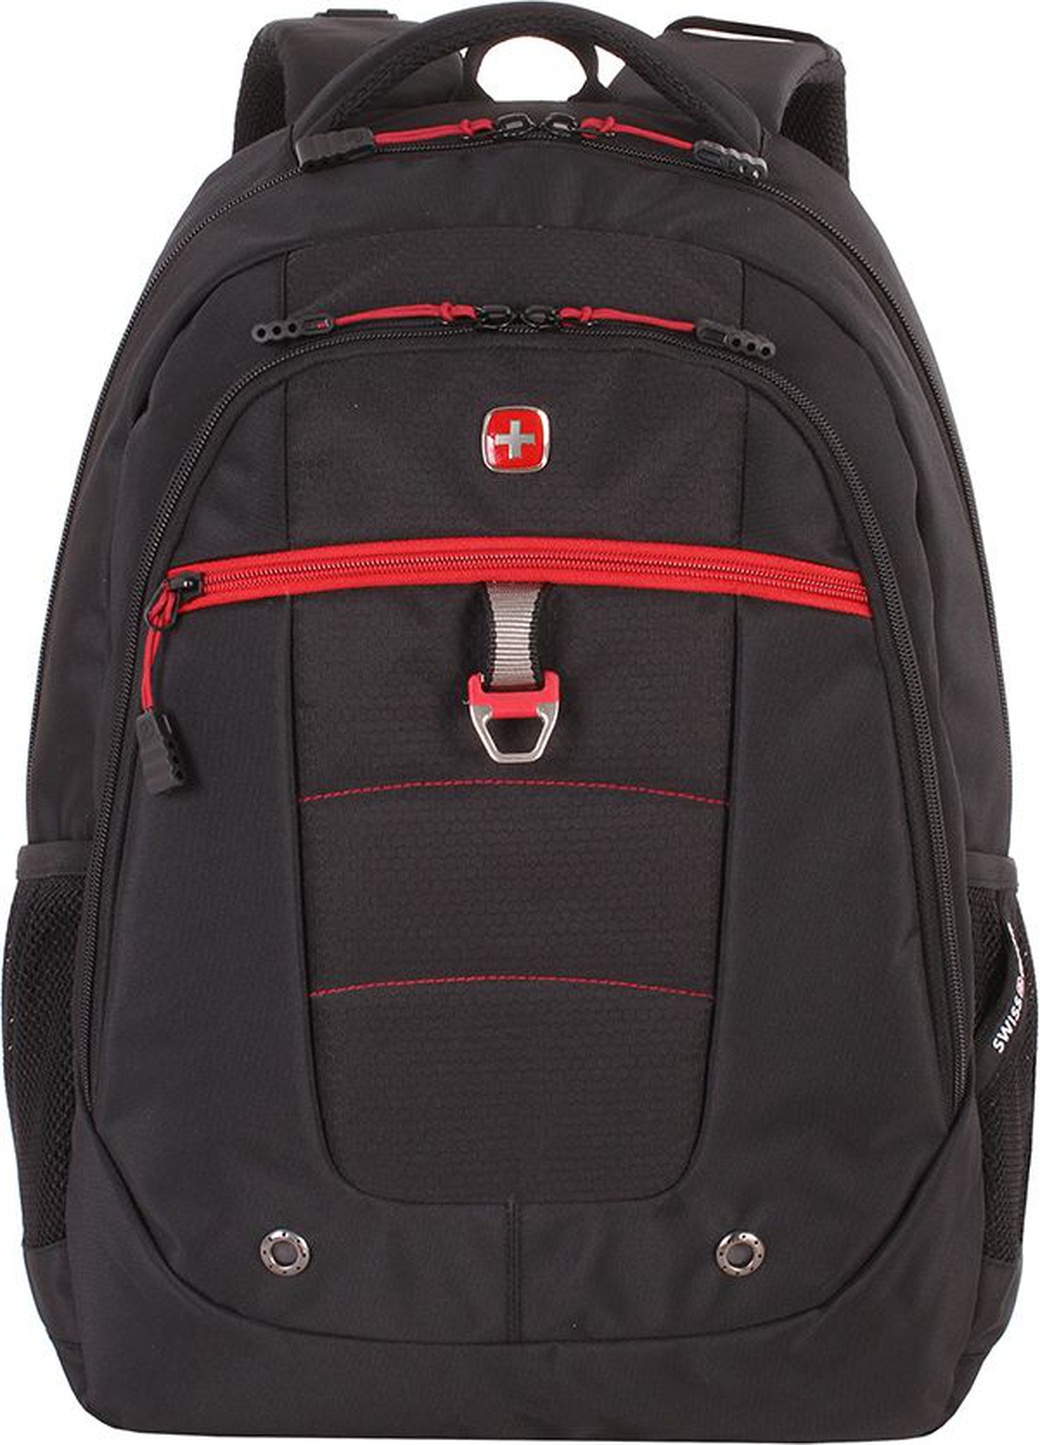 Рюкзак Swissgear 15", черный/красный, 34х18x47 см, 29 л фото